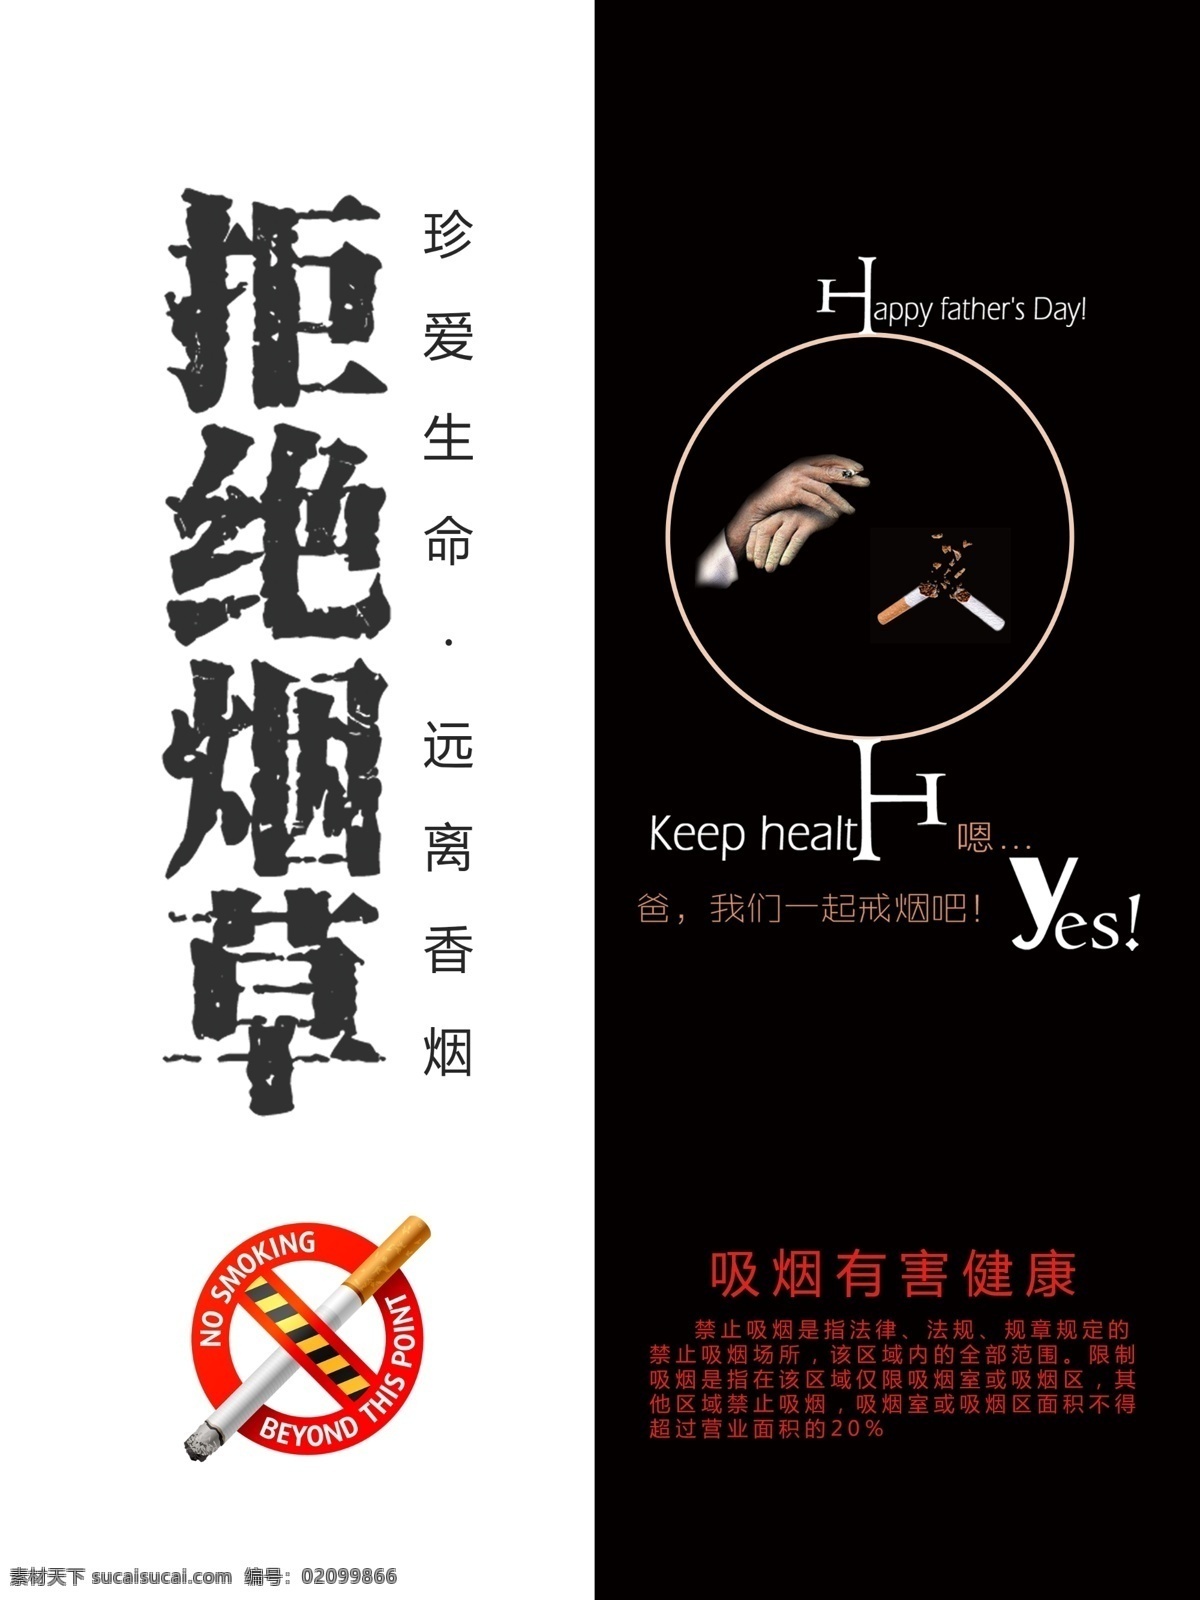 公益广告 戒烟 吸烟有害健康 拒绝烟草 守信戒烟